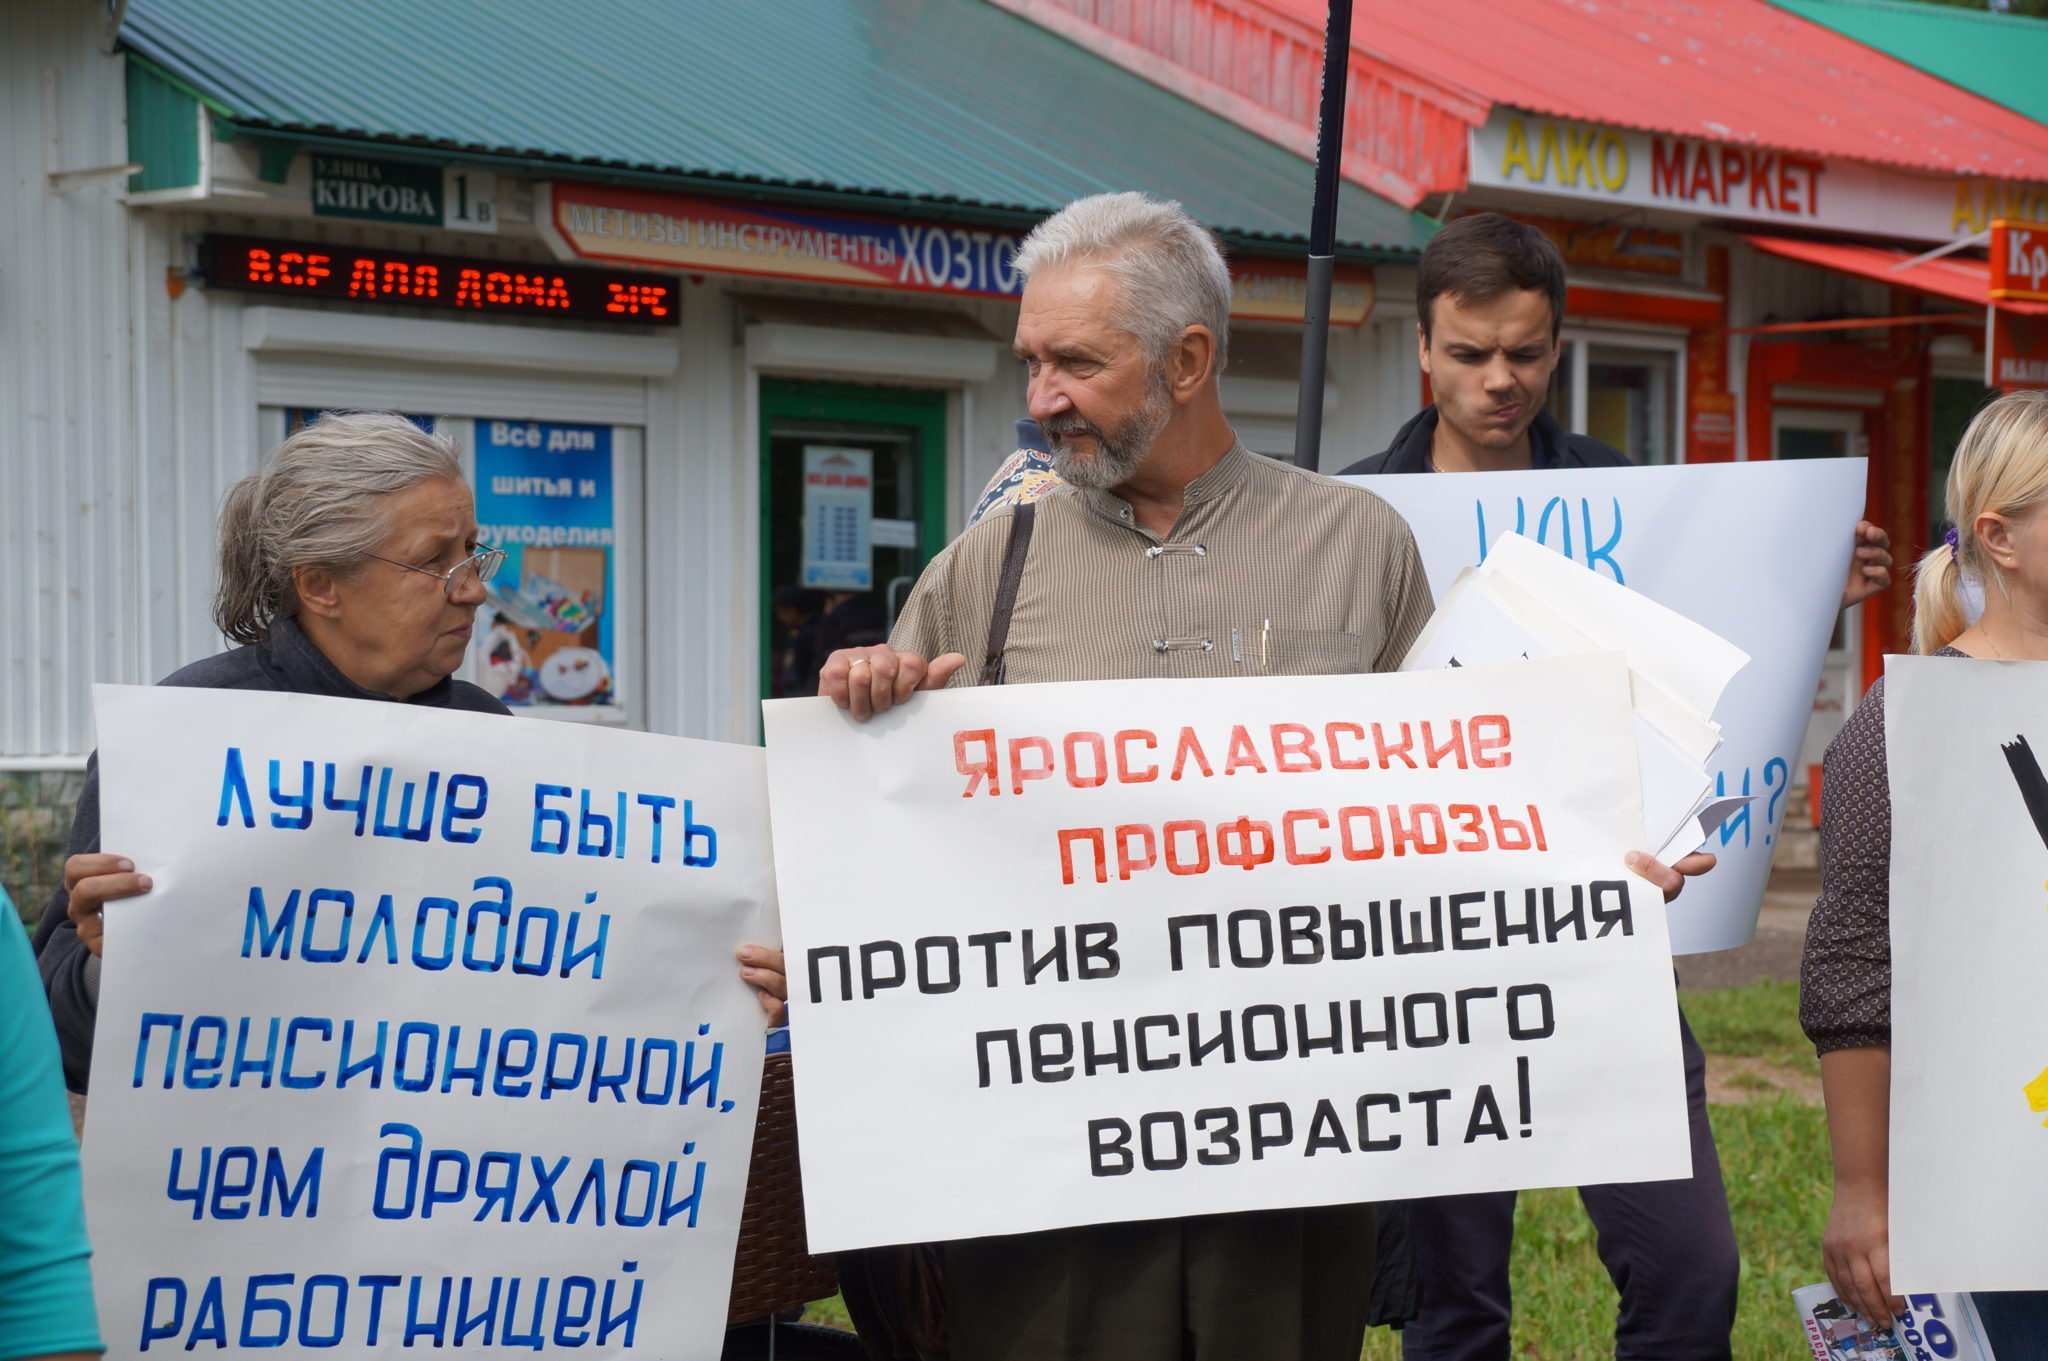 Ярославские профсоюзы выступают против повышения пенсионного возраста!